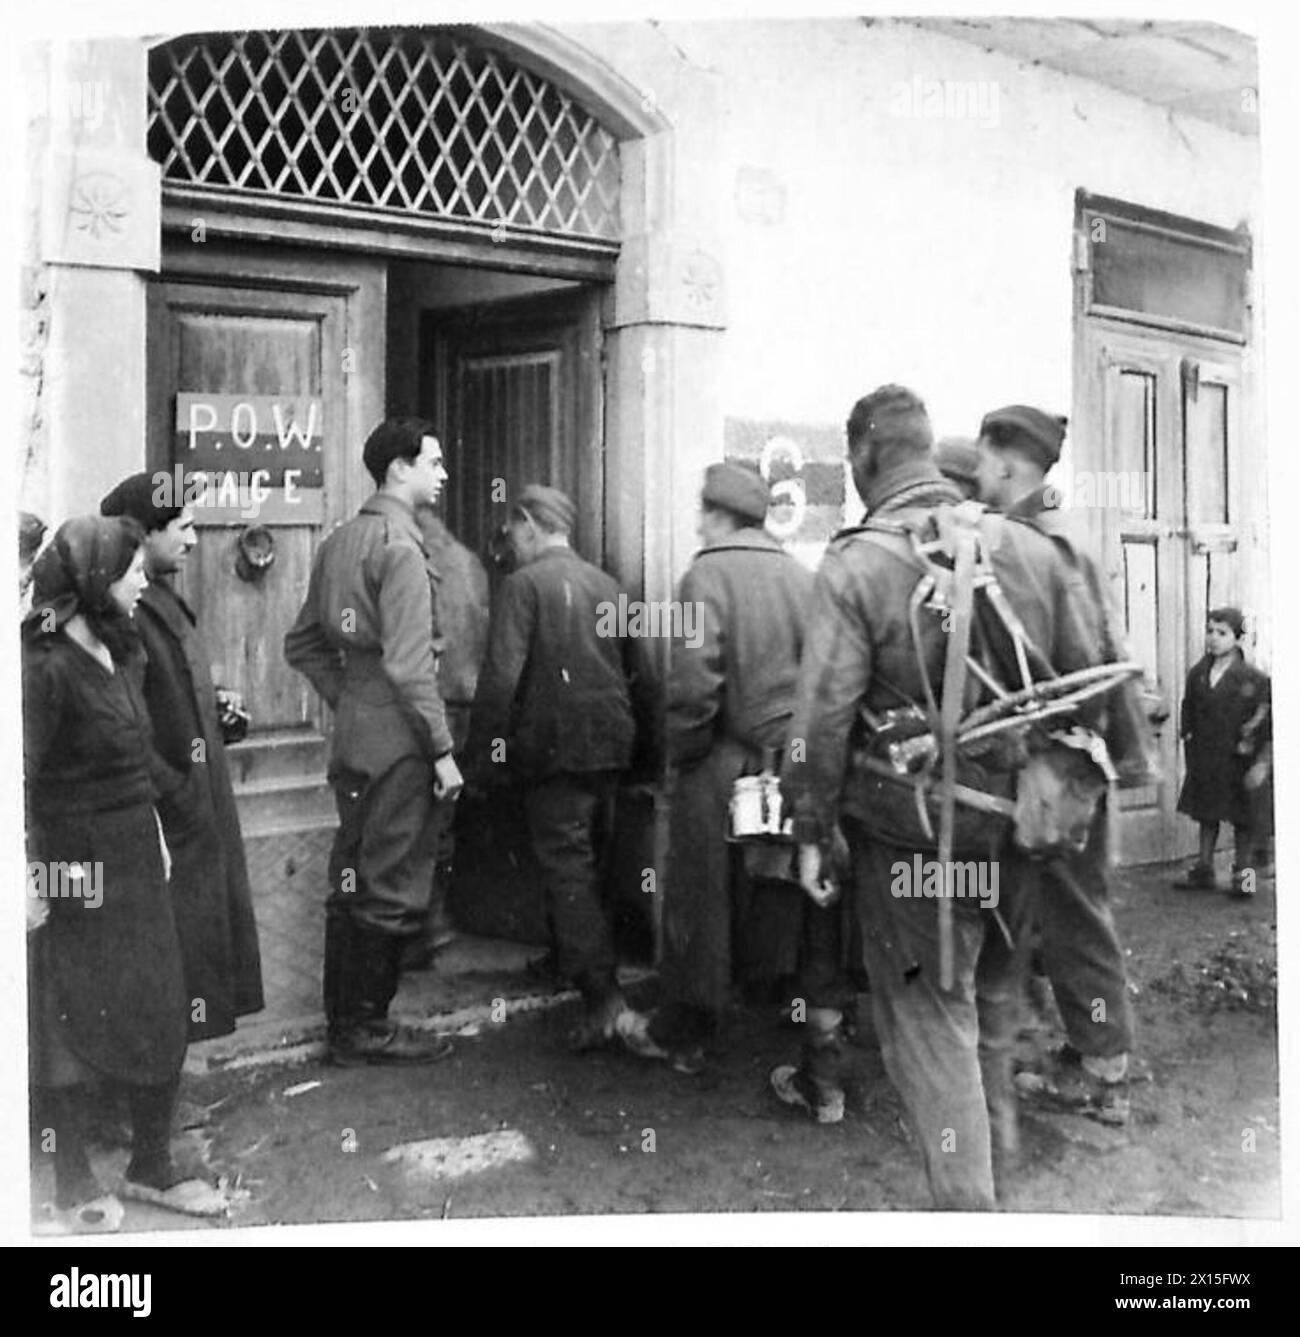 ITALIE : CINQUIÈME ARMYCOMMANDOS RETOUR DU RAID PRÈS DE GARIGLIANO - prisonniers allemands entrant dans la cage P.O.W., tandis que la population italienne satisfaite regarde l'armée britannique Banque D'Images